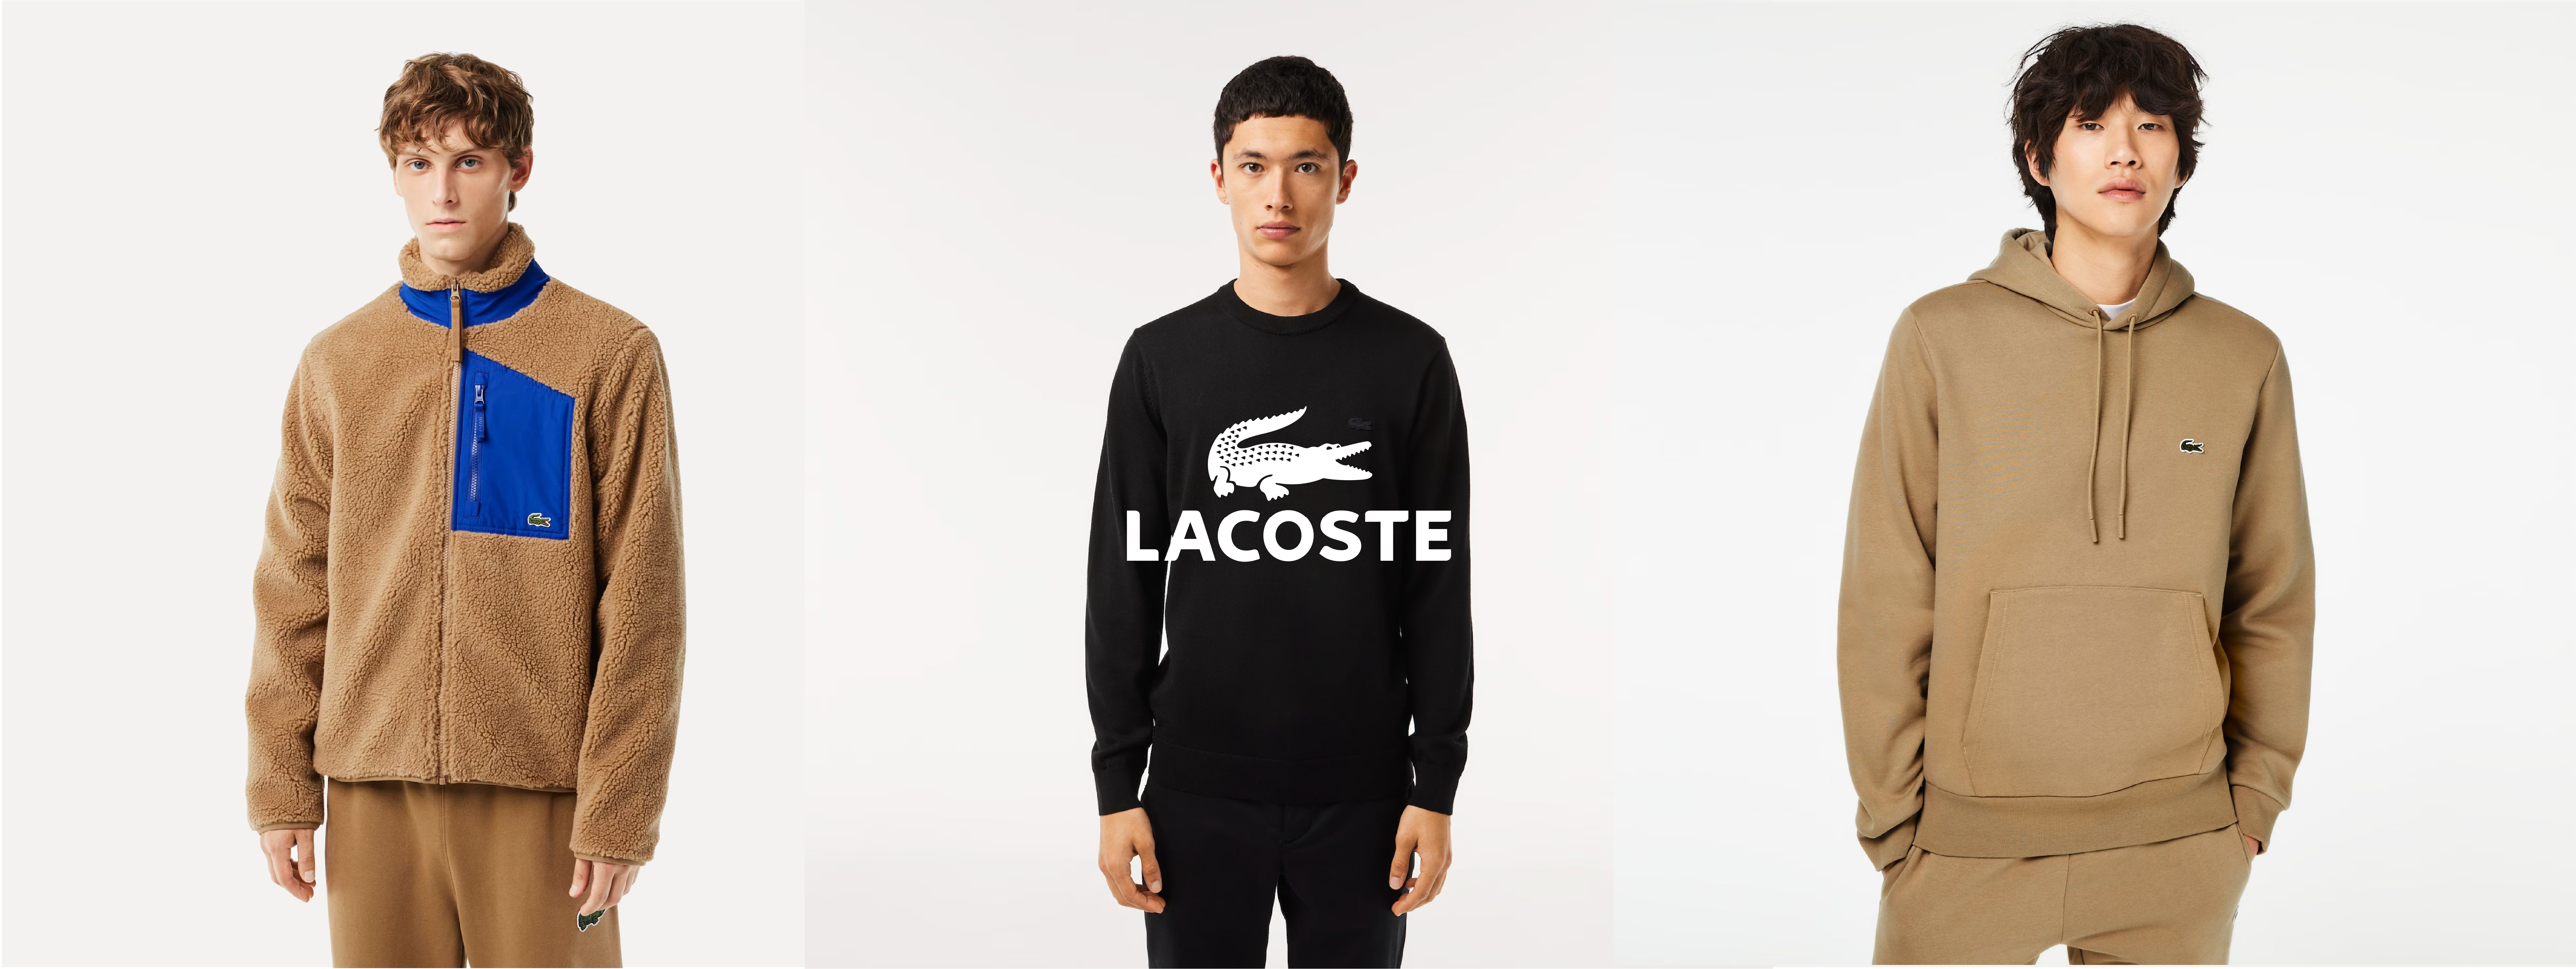 Lacoste CASQUETTE - Marine - Unique Multicolore - Accessoires textile Casquettes  Homme 60,00 €